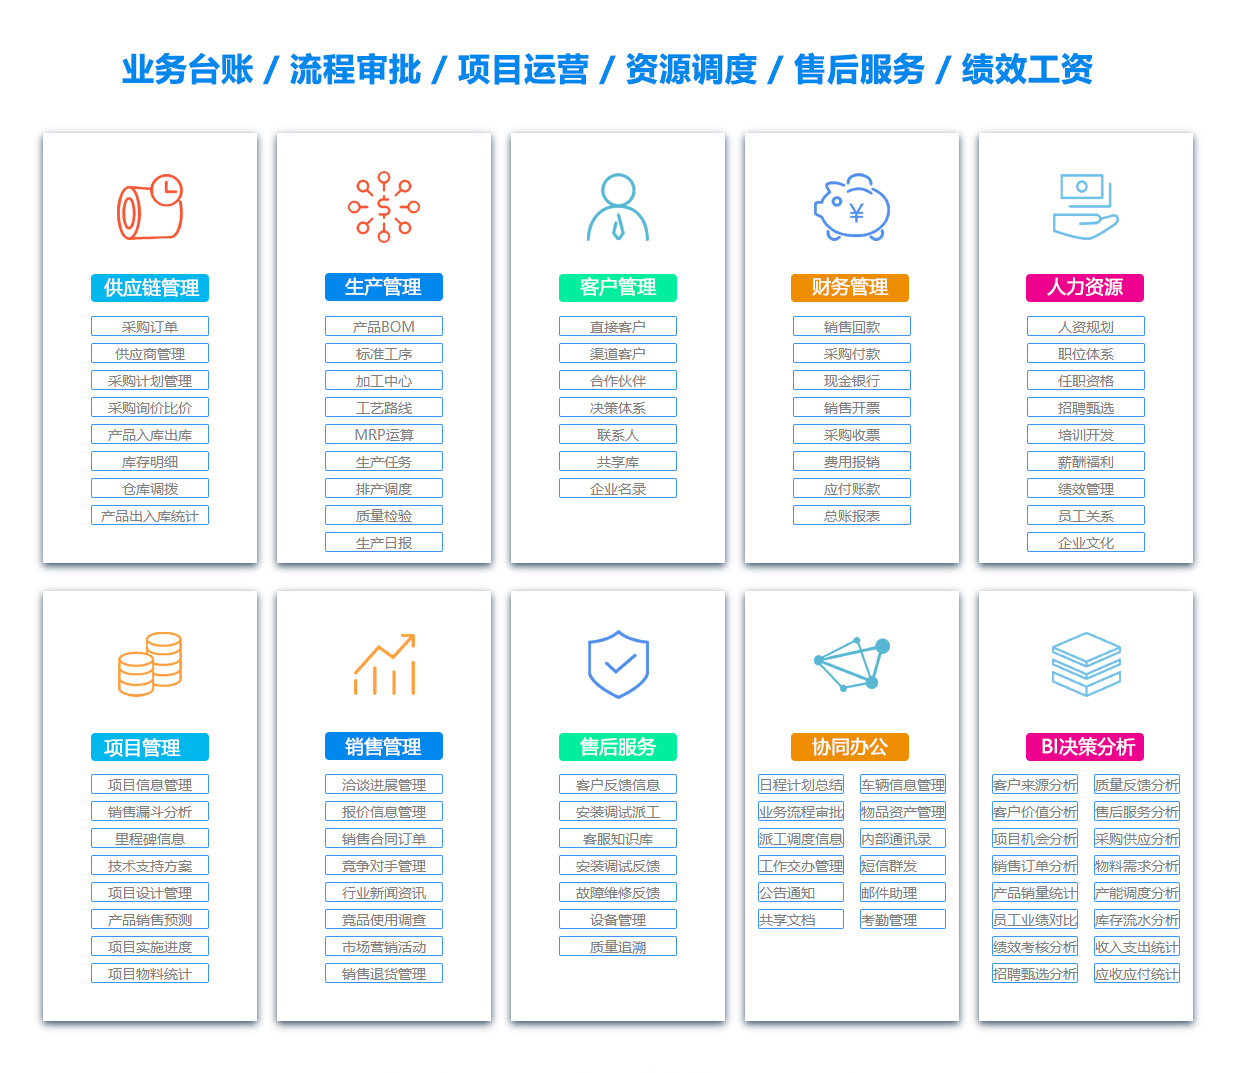 滨州PDM:产品数据管理系统